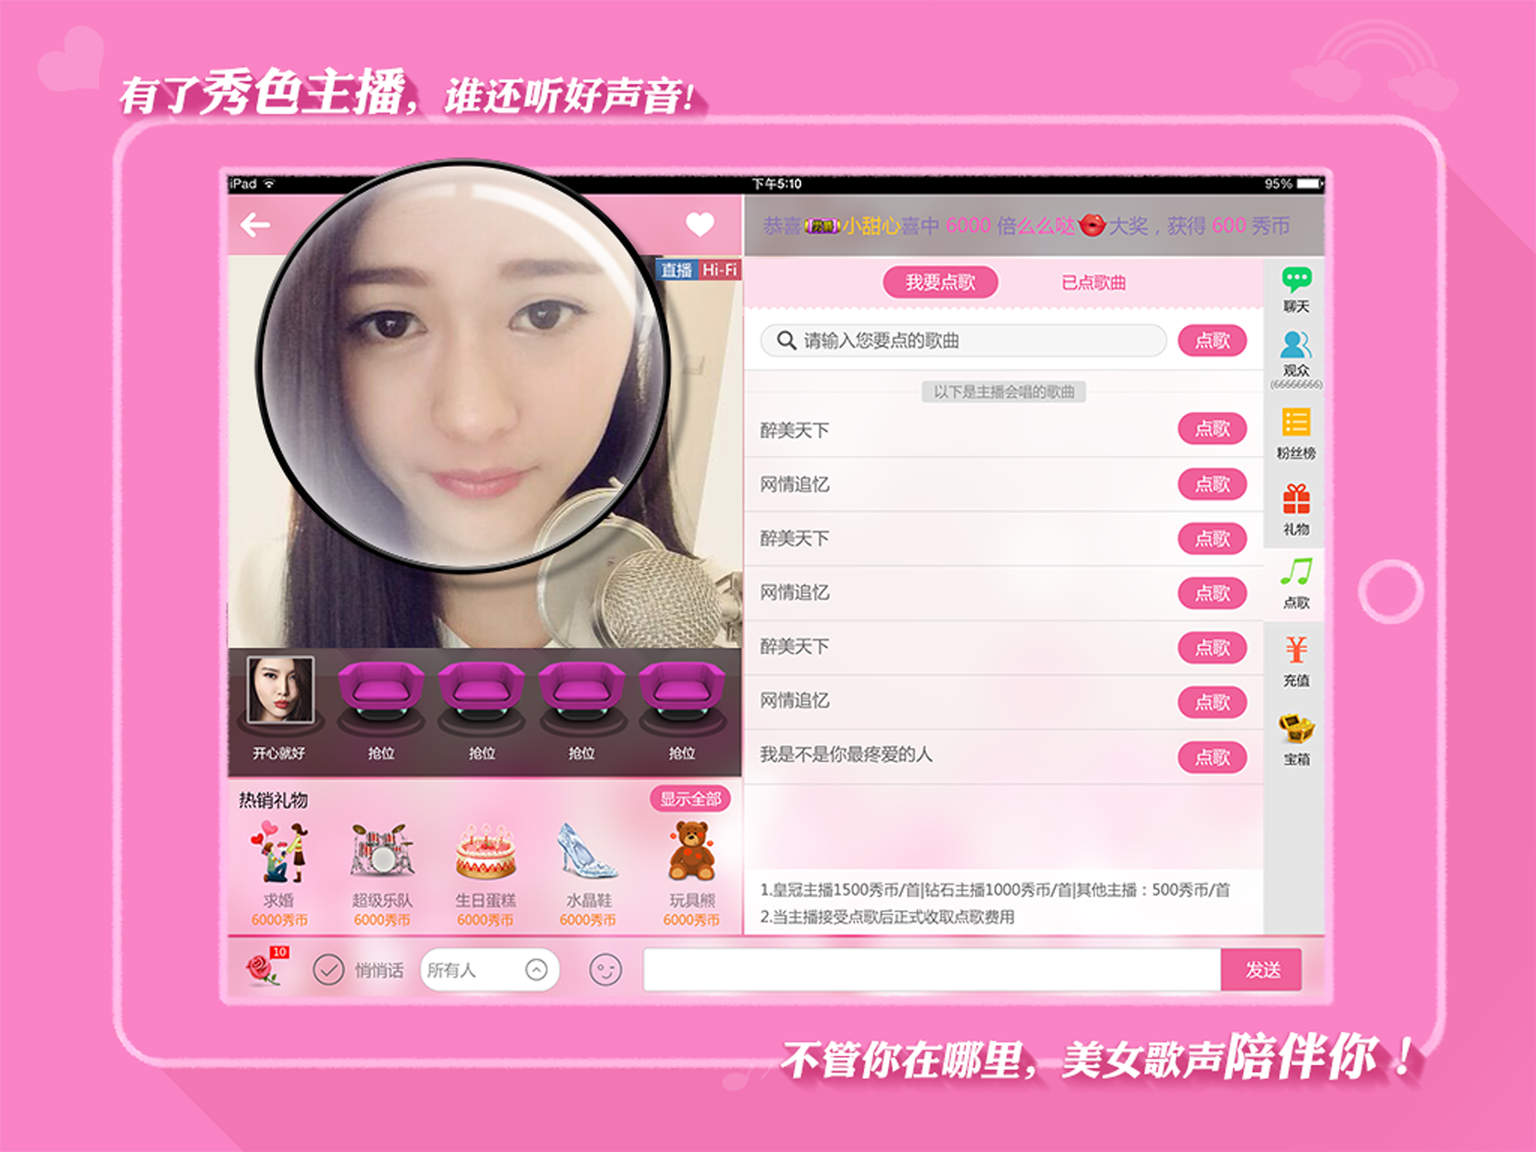 秀色直播hd for ipad - app marketing report - hong kong en | app